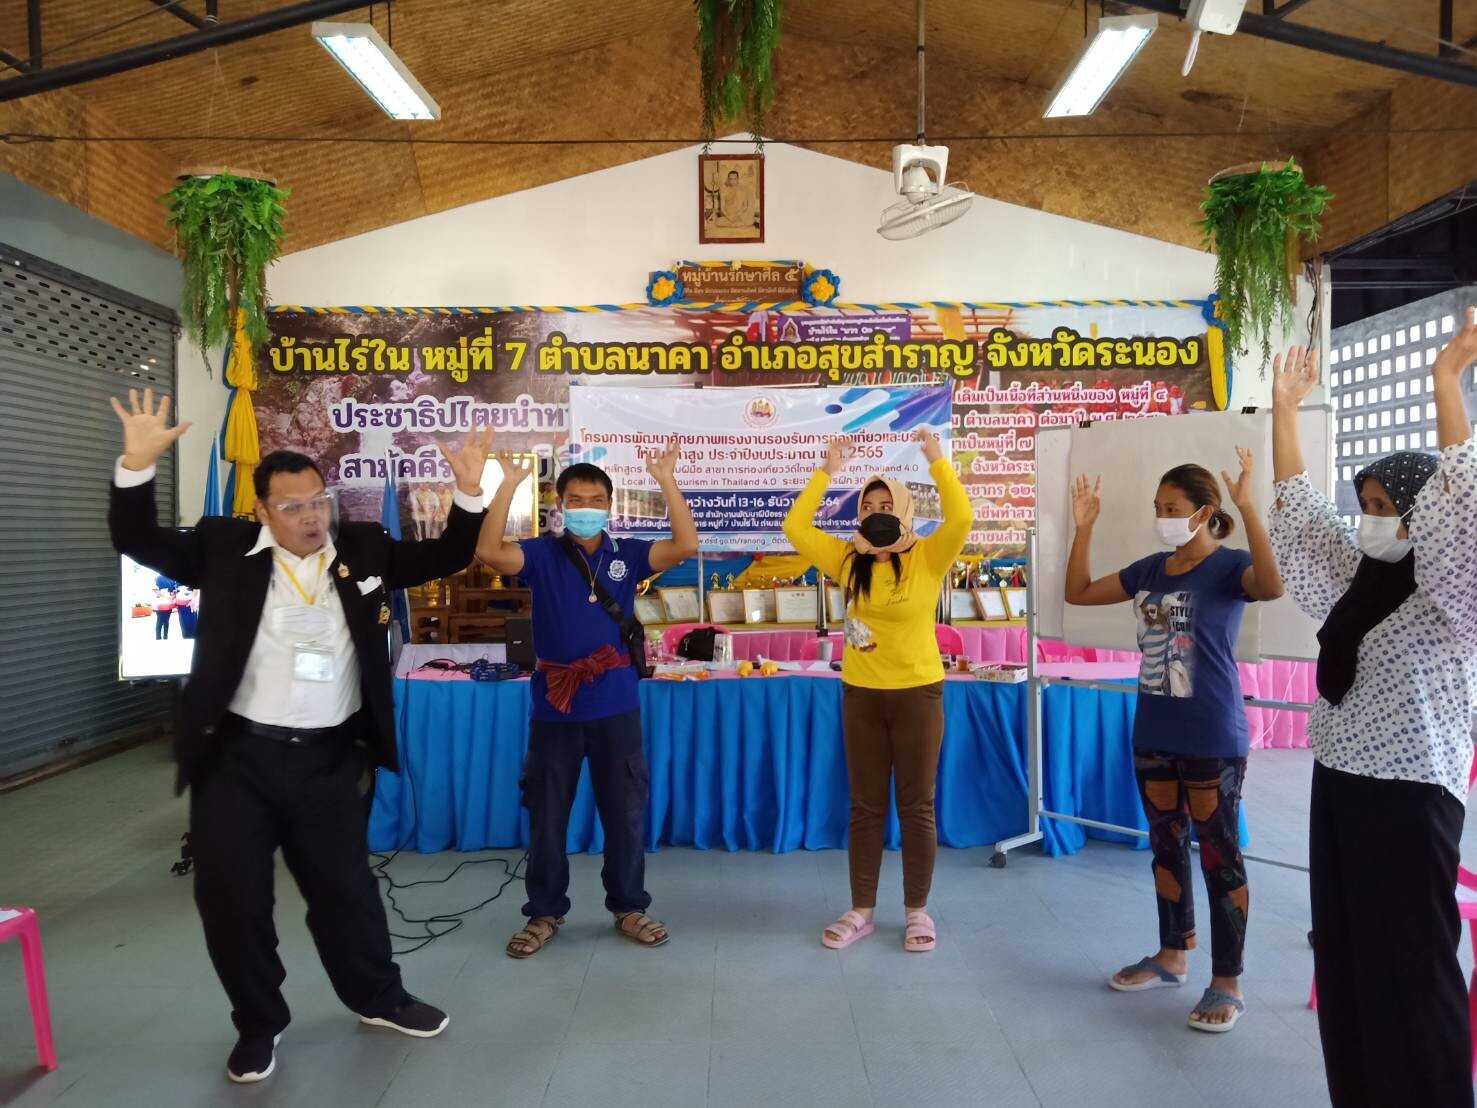 สำนักงานพัฒนาฝีมือแรงงานระนอง จัดฝึกอบหลักสูตร การท่องเที่ยววิถีไทยในชุมชนยุค Thailand 4.0 Local living tourism in Thailand 4.0